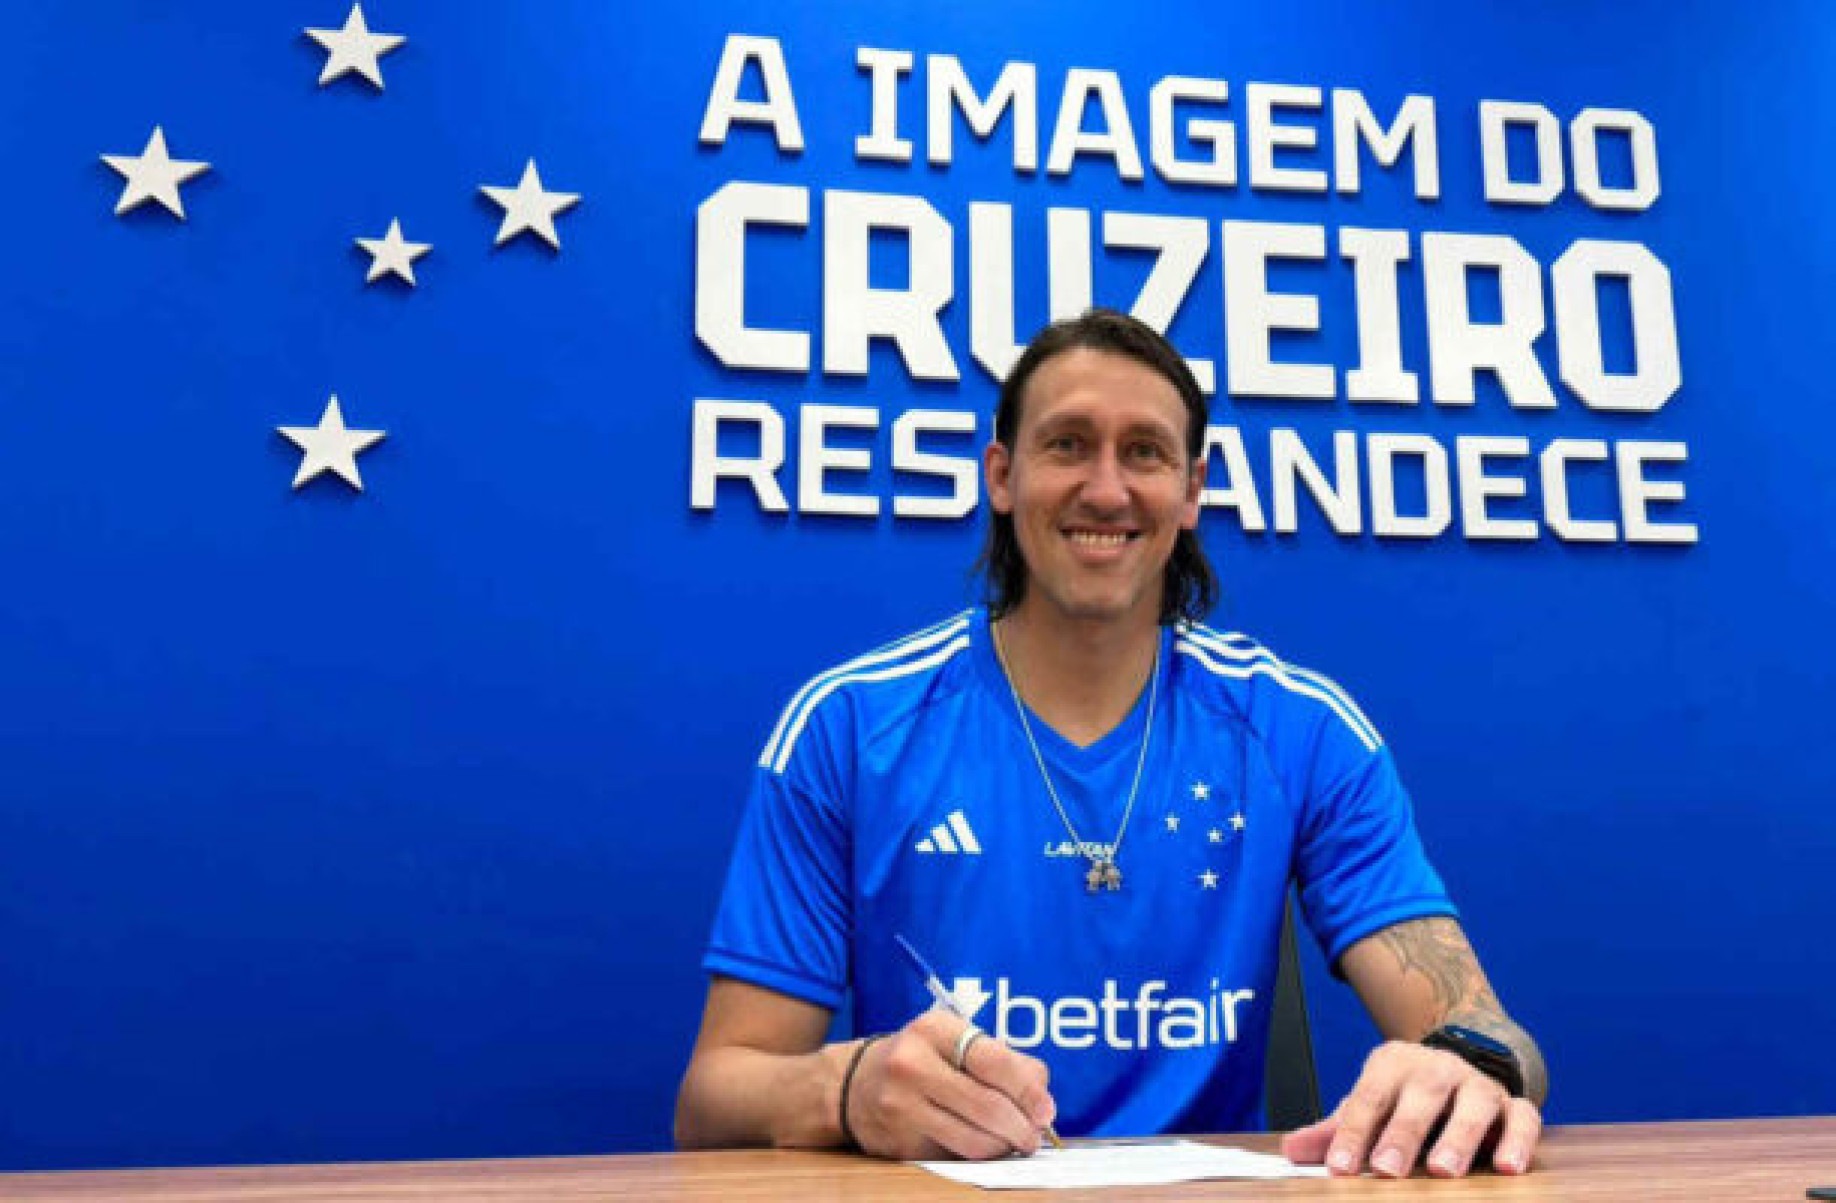 Cássio assina contrato com o Cruzeiro até junho de 2027